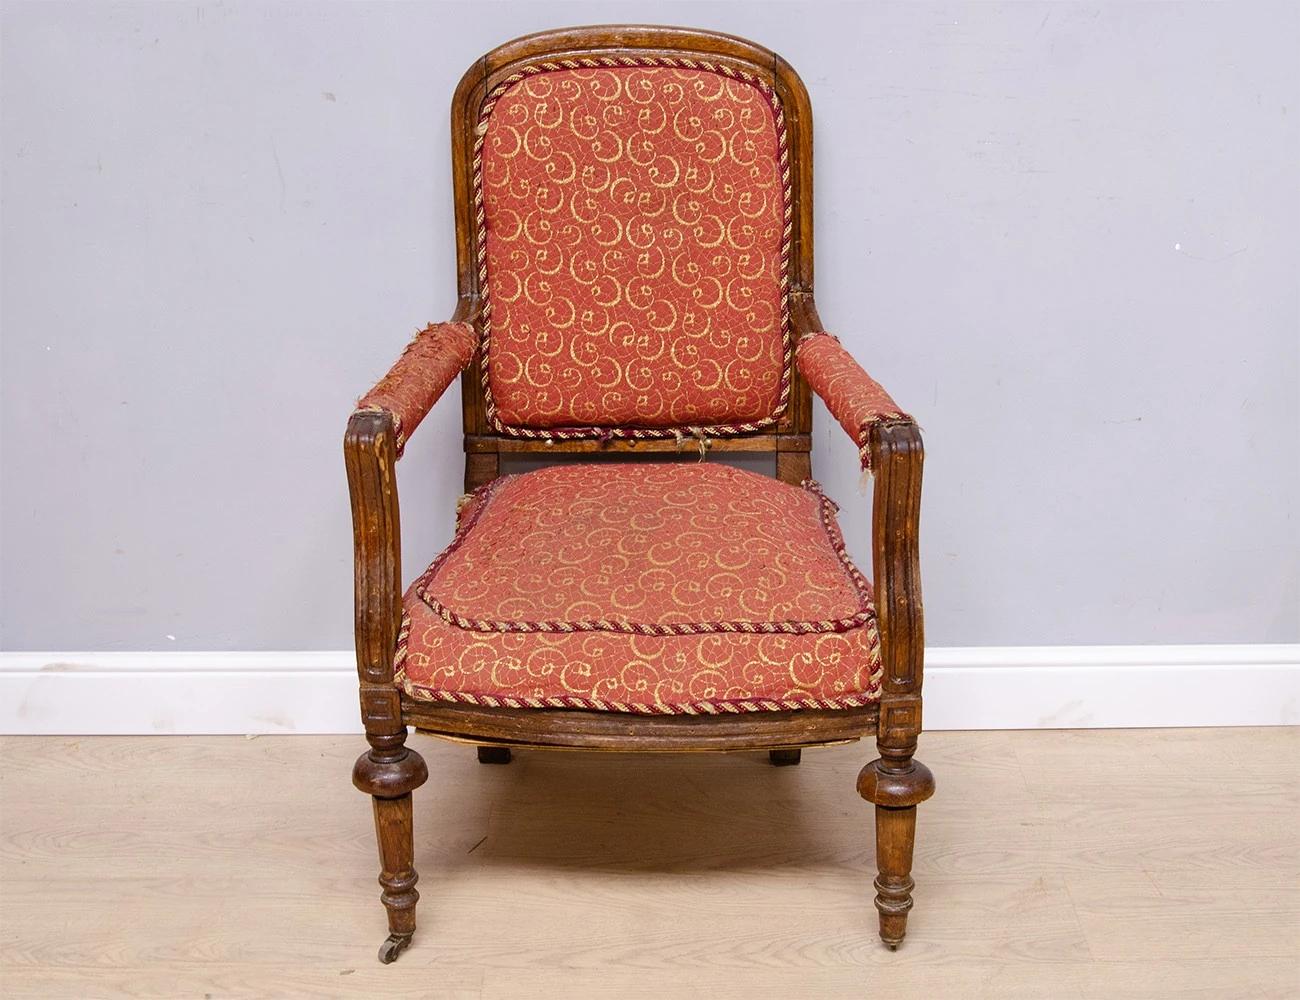 Реставрация дубового кресла 19 века